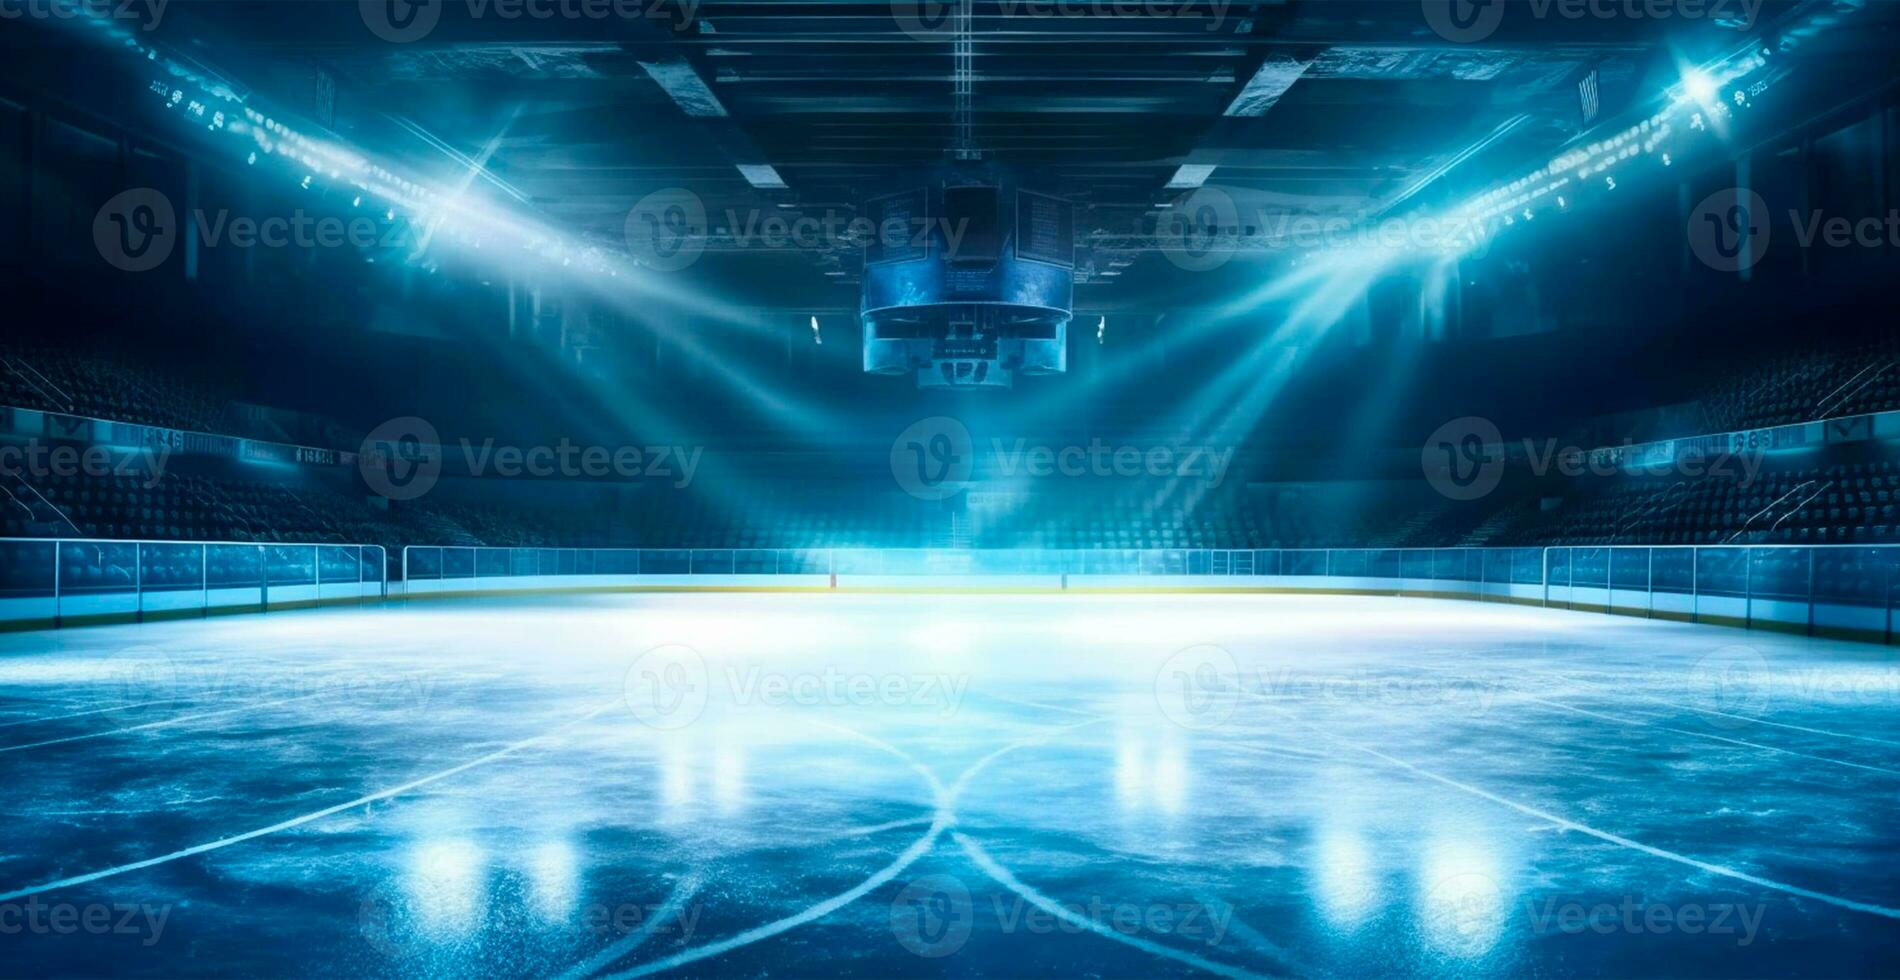 hockey stadio, vuoto gli sport arena con ghiaccio pista di pattinaggio, freddo sfondo con luminosa illuminazione - ai generato Immagine foto